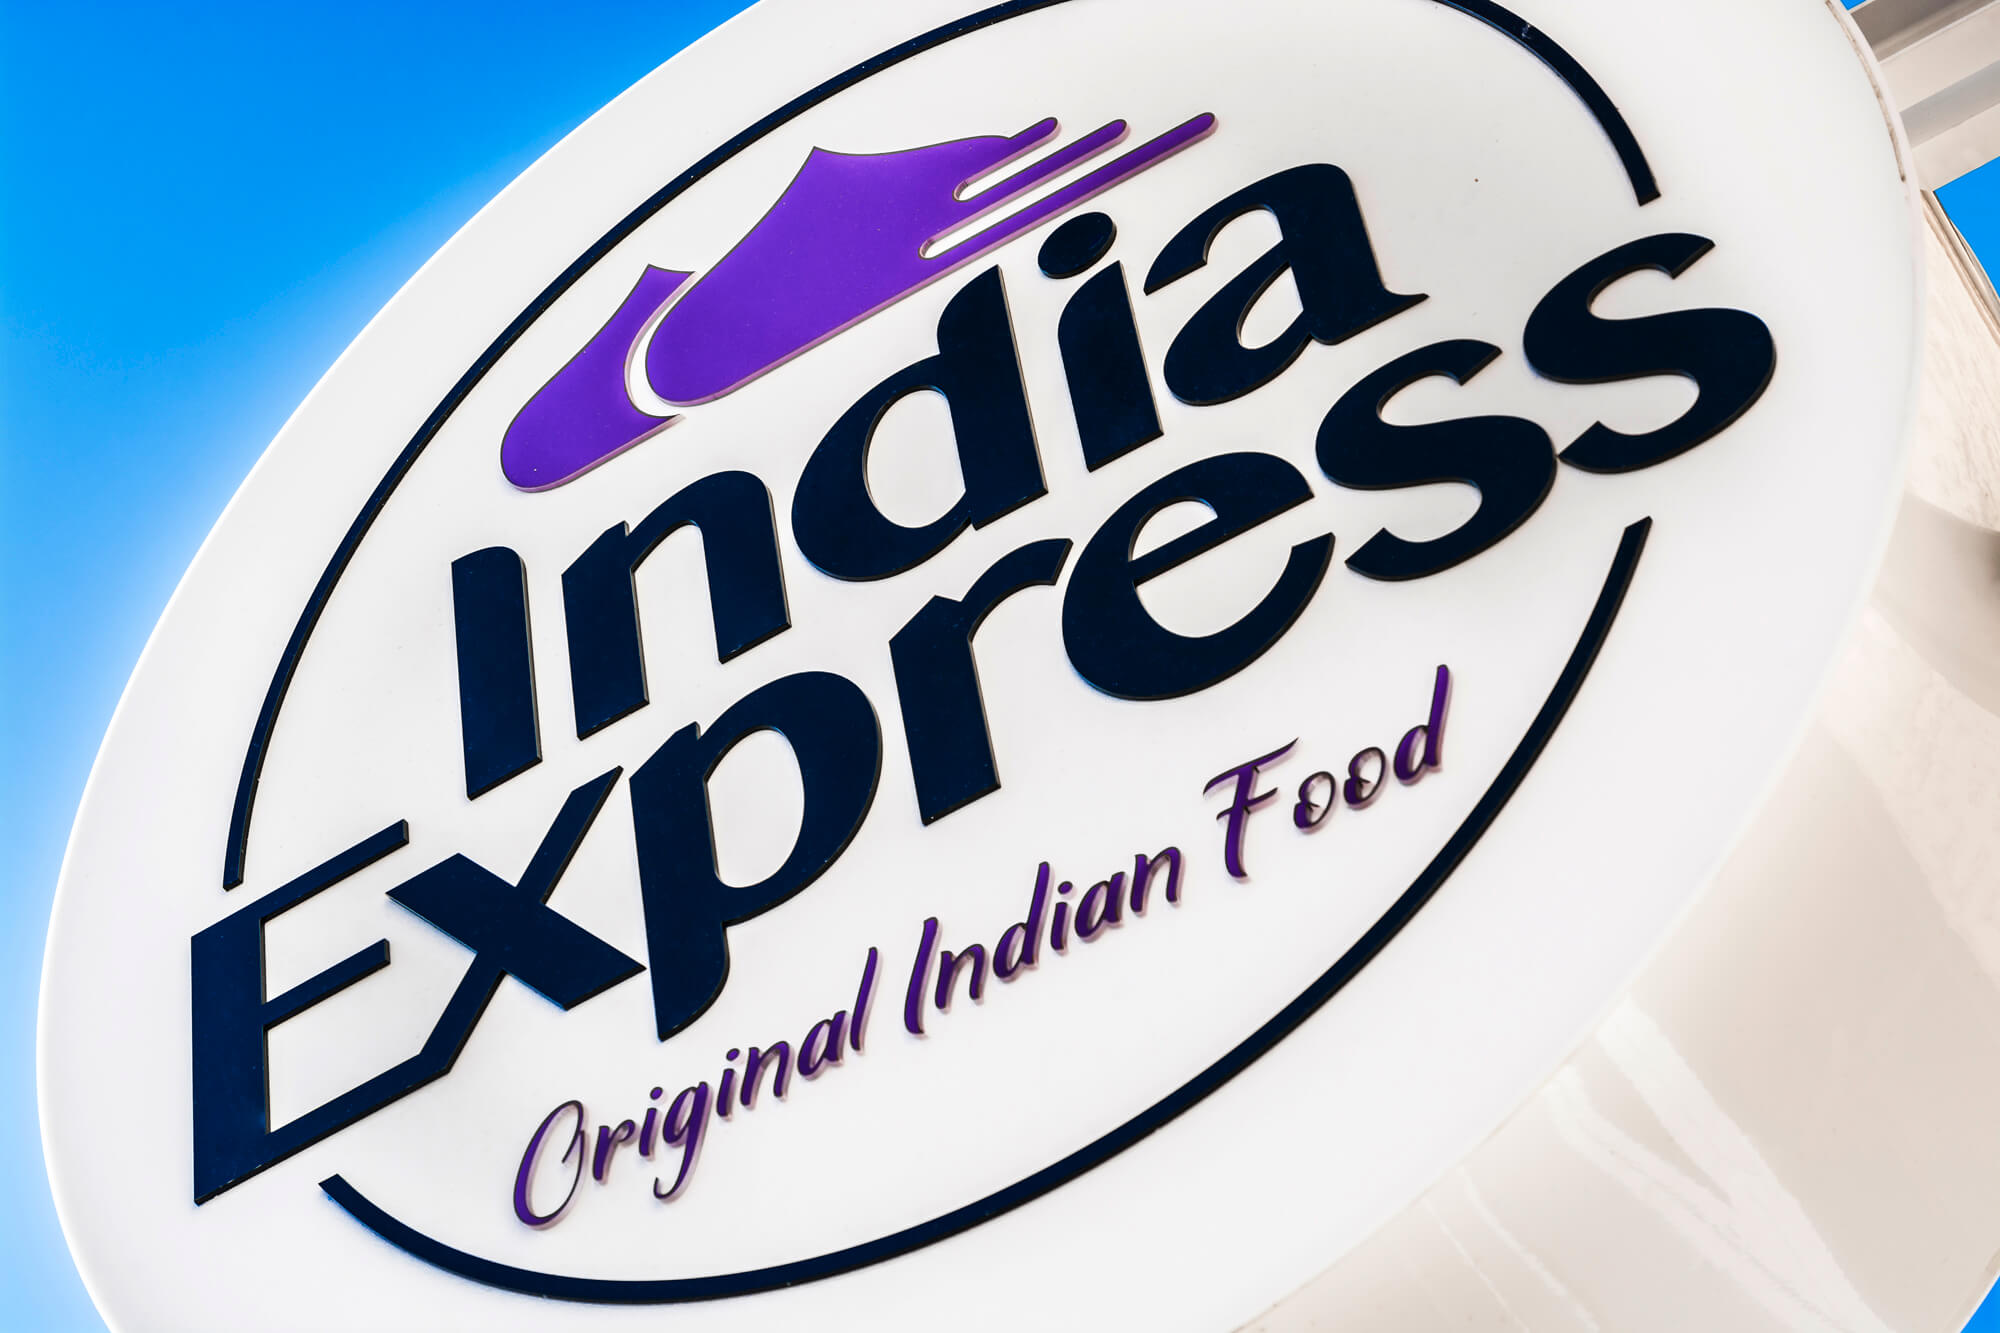 India Express - India Express - semáforo publicitario con el logotipo de la empresa colgado junto a la entrada